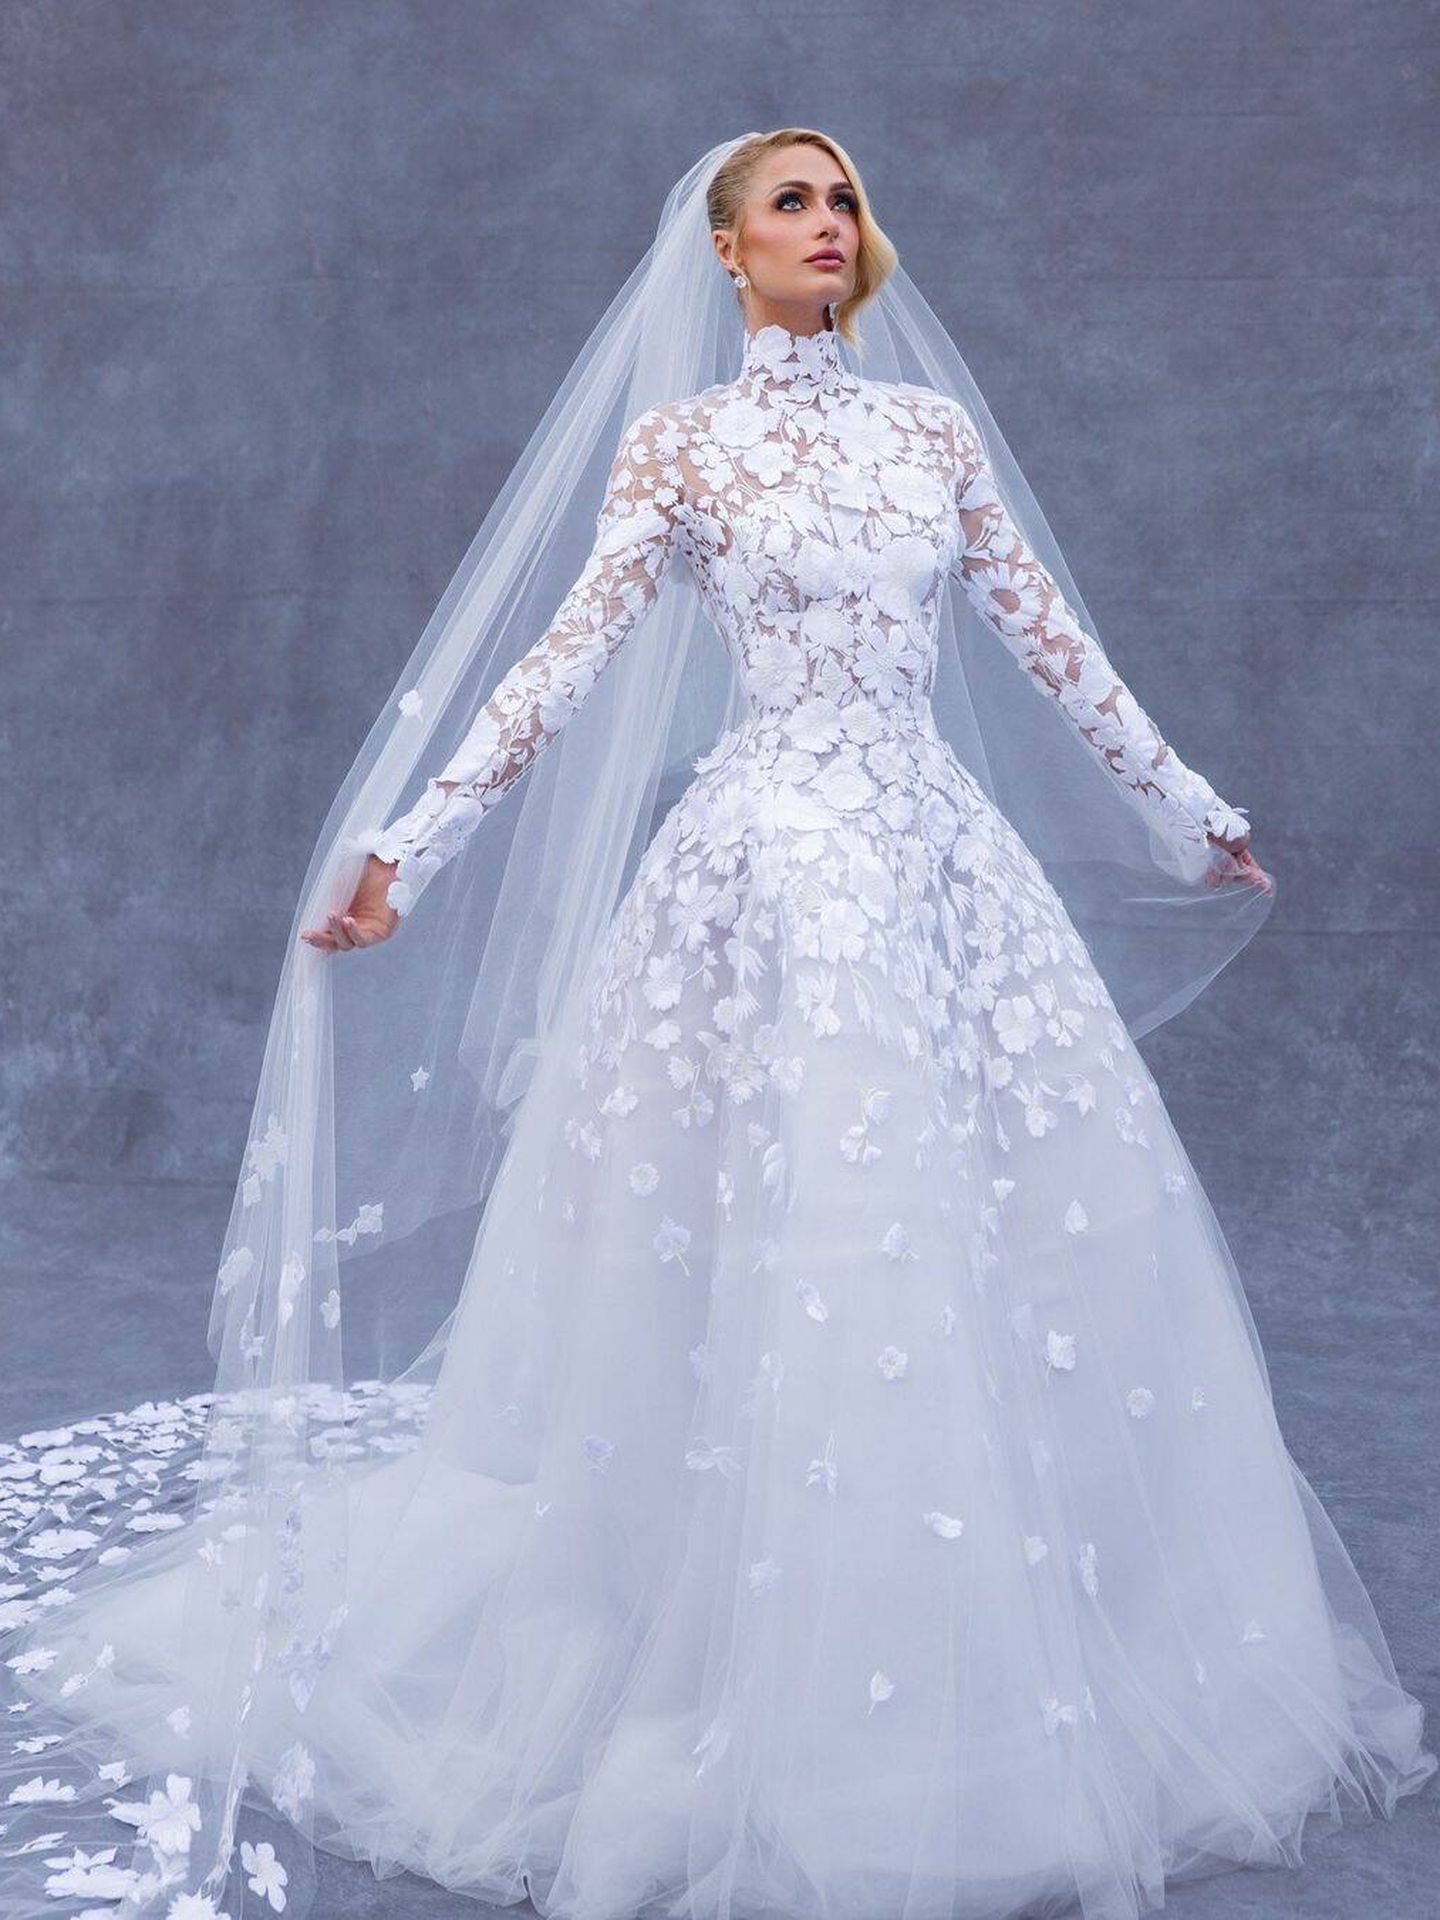 130 vestidos de novia con encaje: diseños elegantes y sutiles  Vestidos de  novia con encaje, Vestidos de novia, Vestidos de novia convertibles